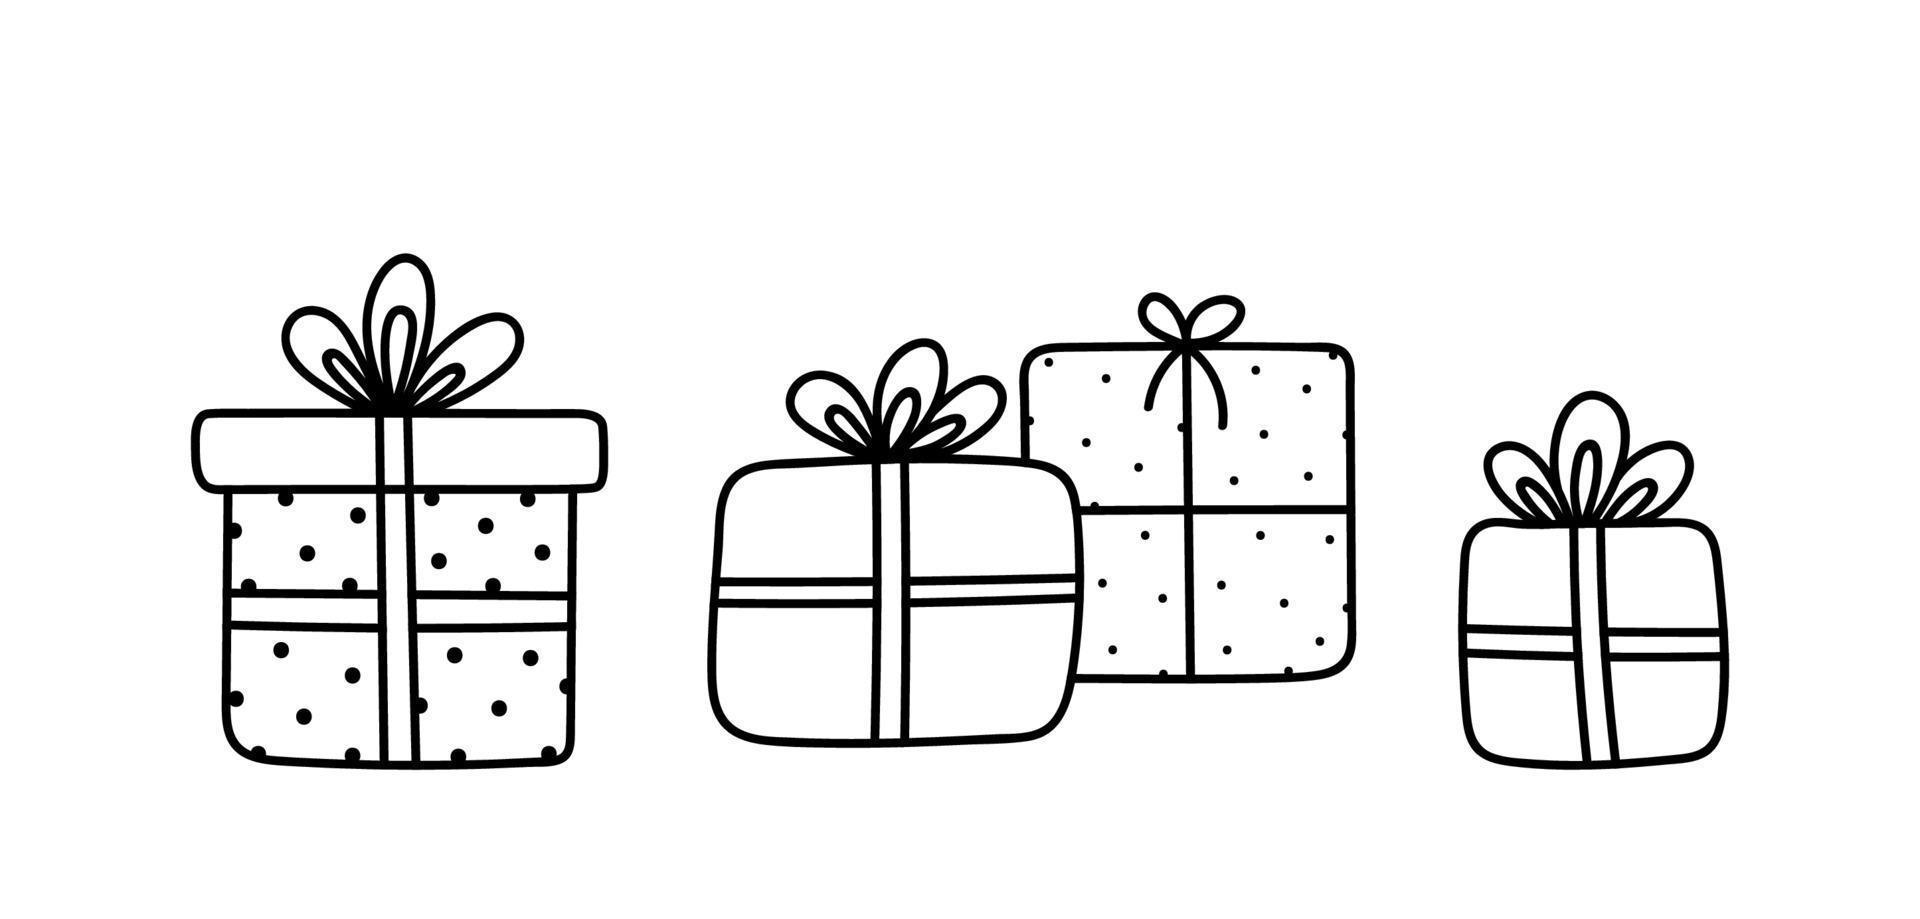 süße Weihnachtsgeschenke mit Schleifen und Bändern auf weißem Hintergrund. handgezeichnete Vektorgrafik im Doodle-Stil. perfekt für Weihnachts- und Geburtstagsdesigns, Karten, Dekorationen, Logos. vektor